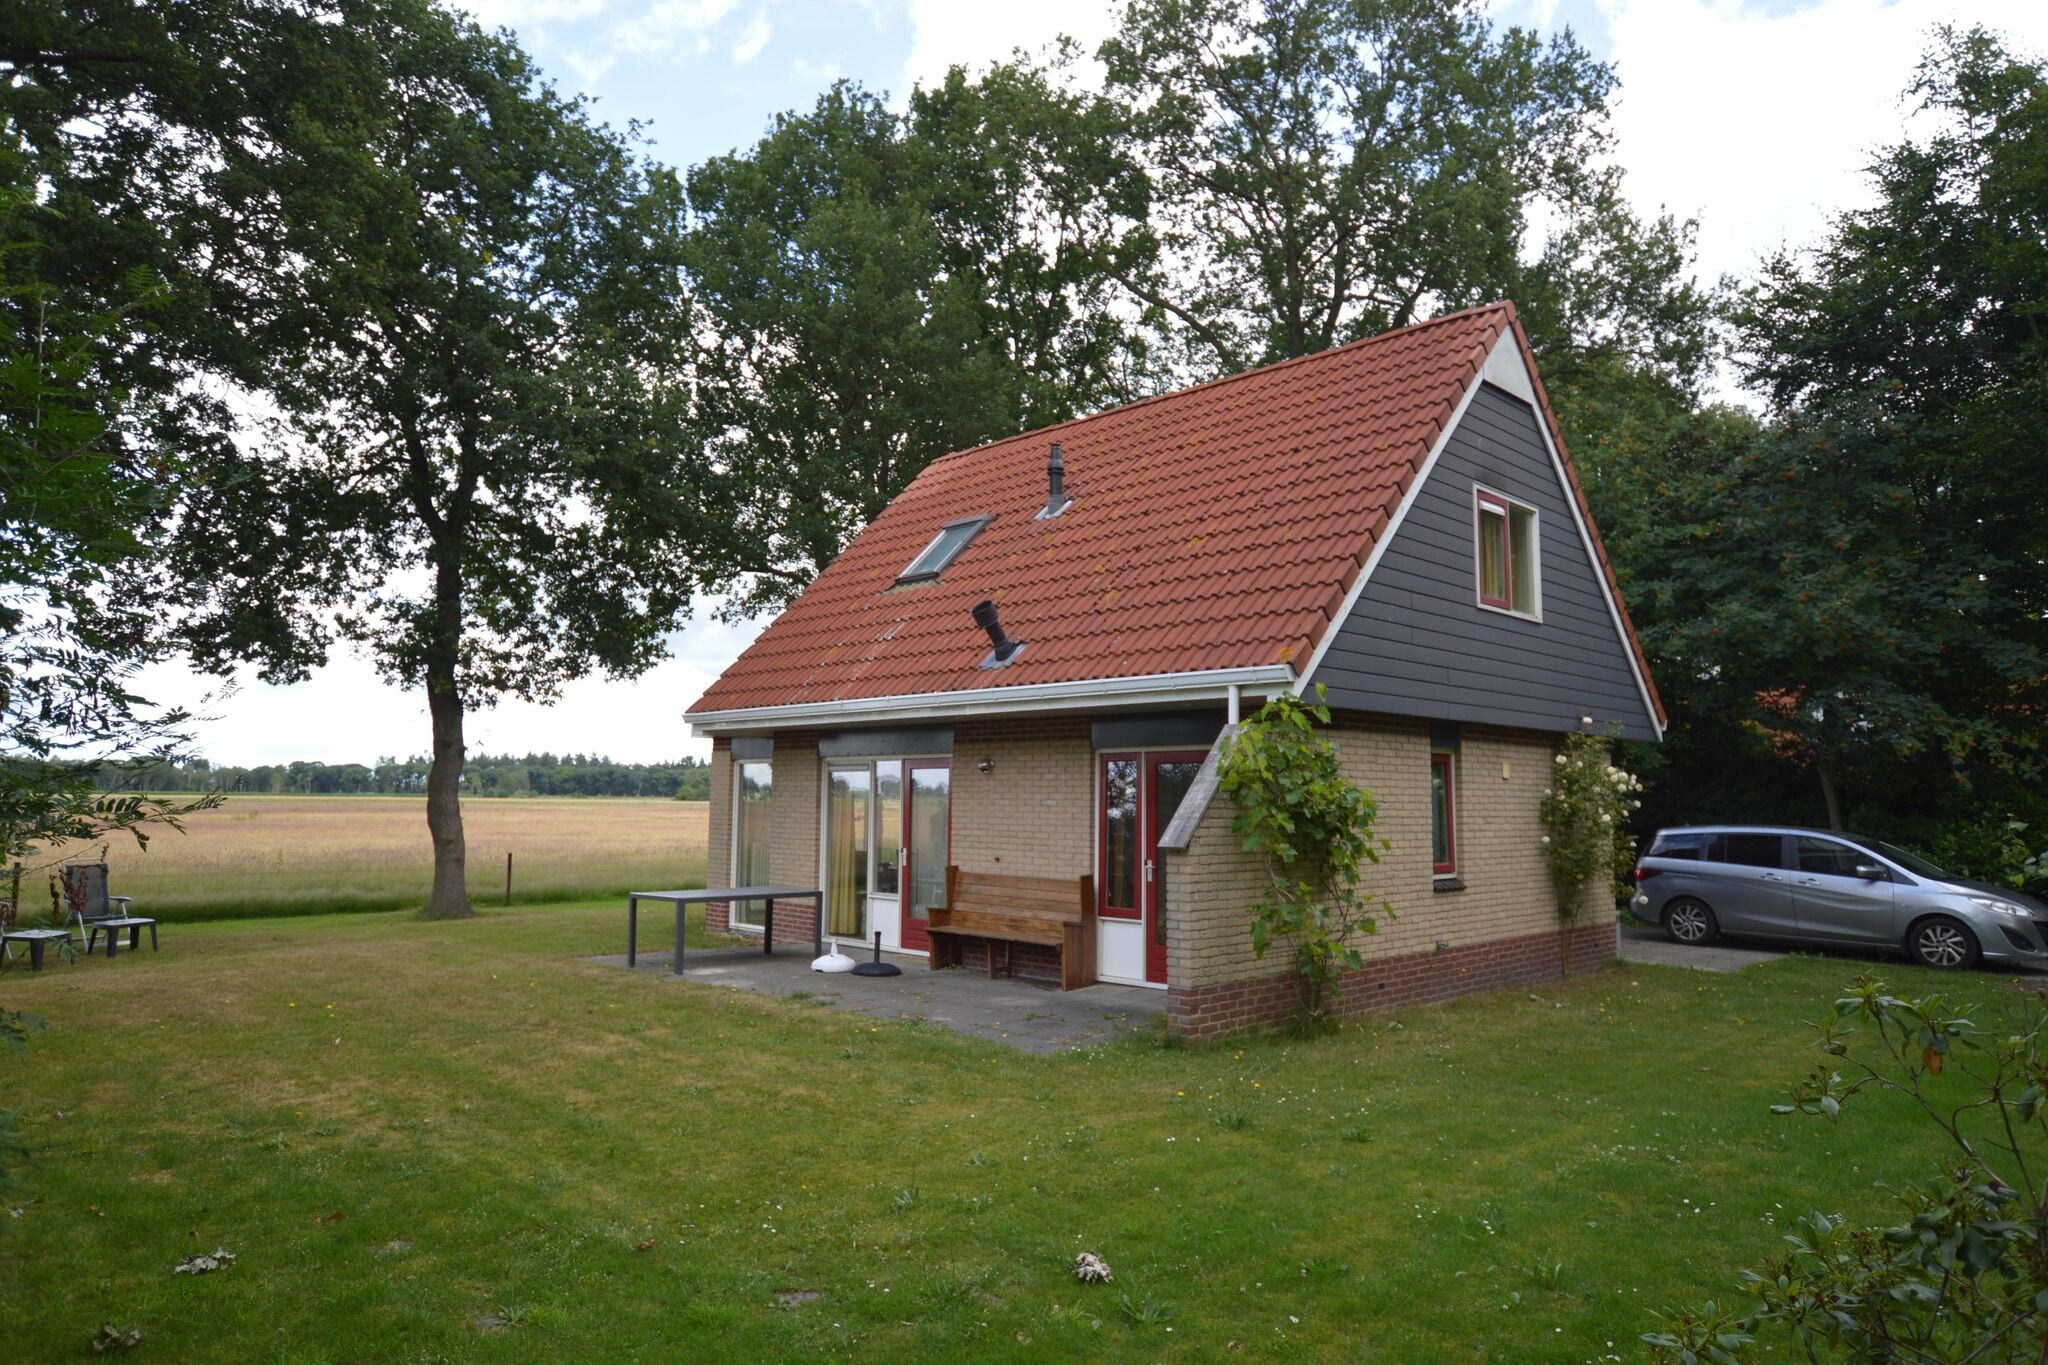 Gezellig vakantiehuis vlak bij de Lemelerberg met riante tuin